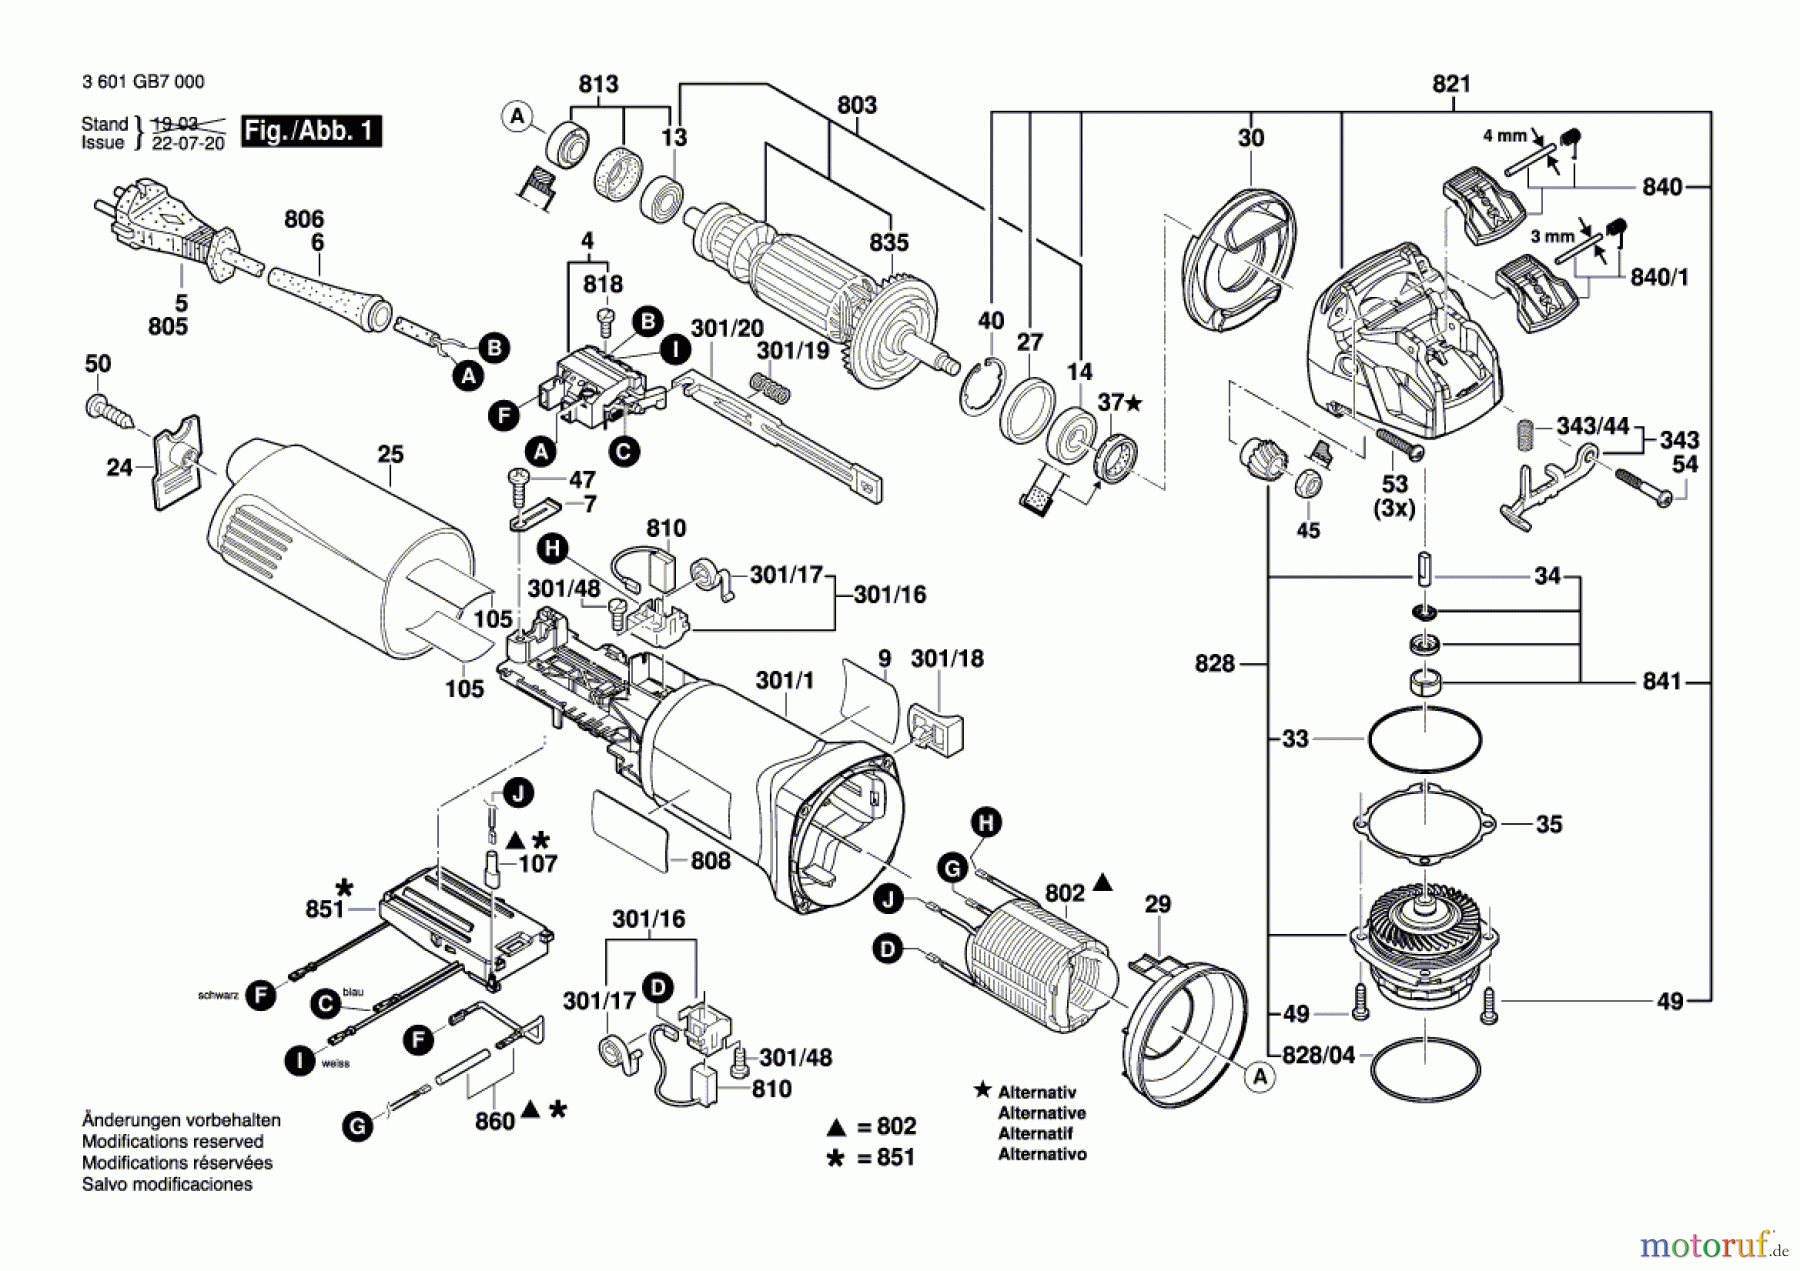  Bosch Werkzeug Winkelschleifer GWX 14-125 Seite 1